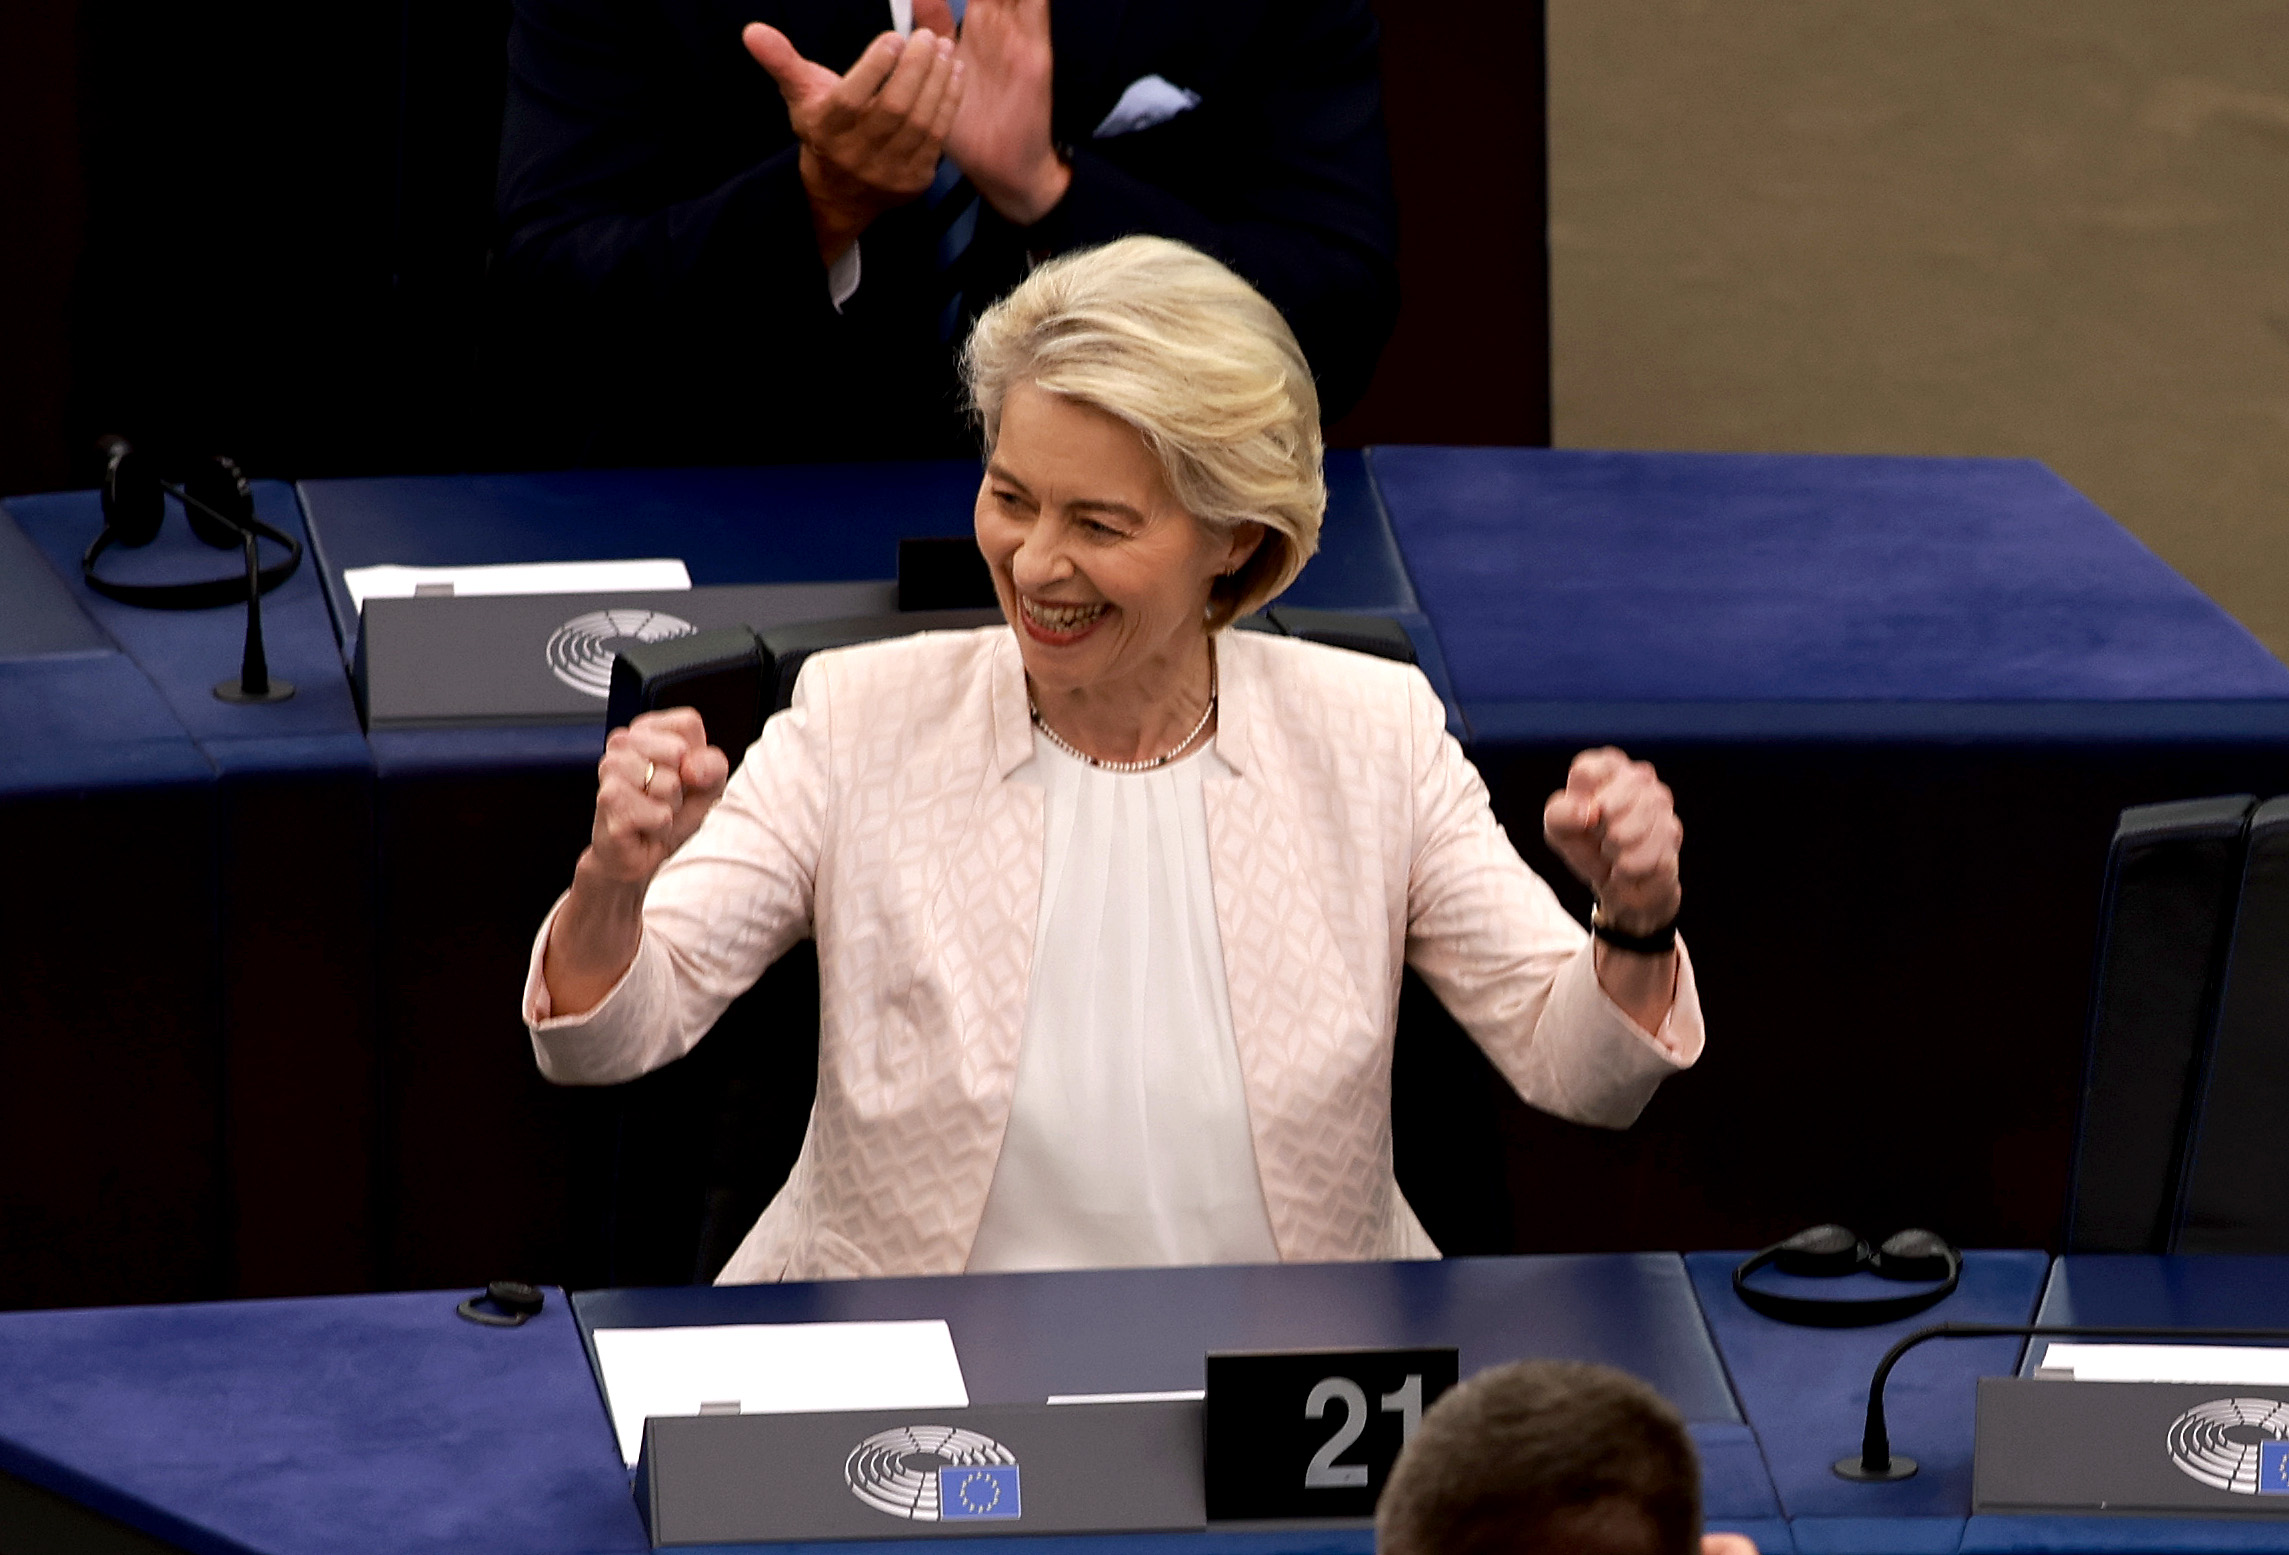 Eldőlt: újabb öt évre Ursula von der Leyen lesz az Európai Bizottság elnöke